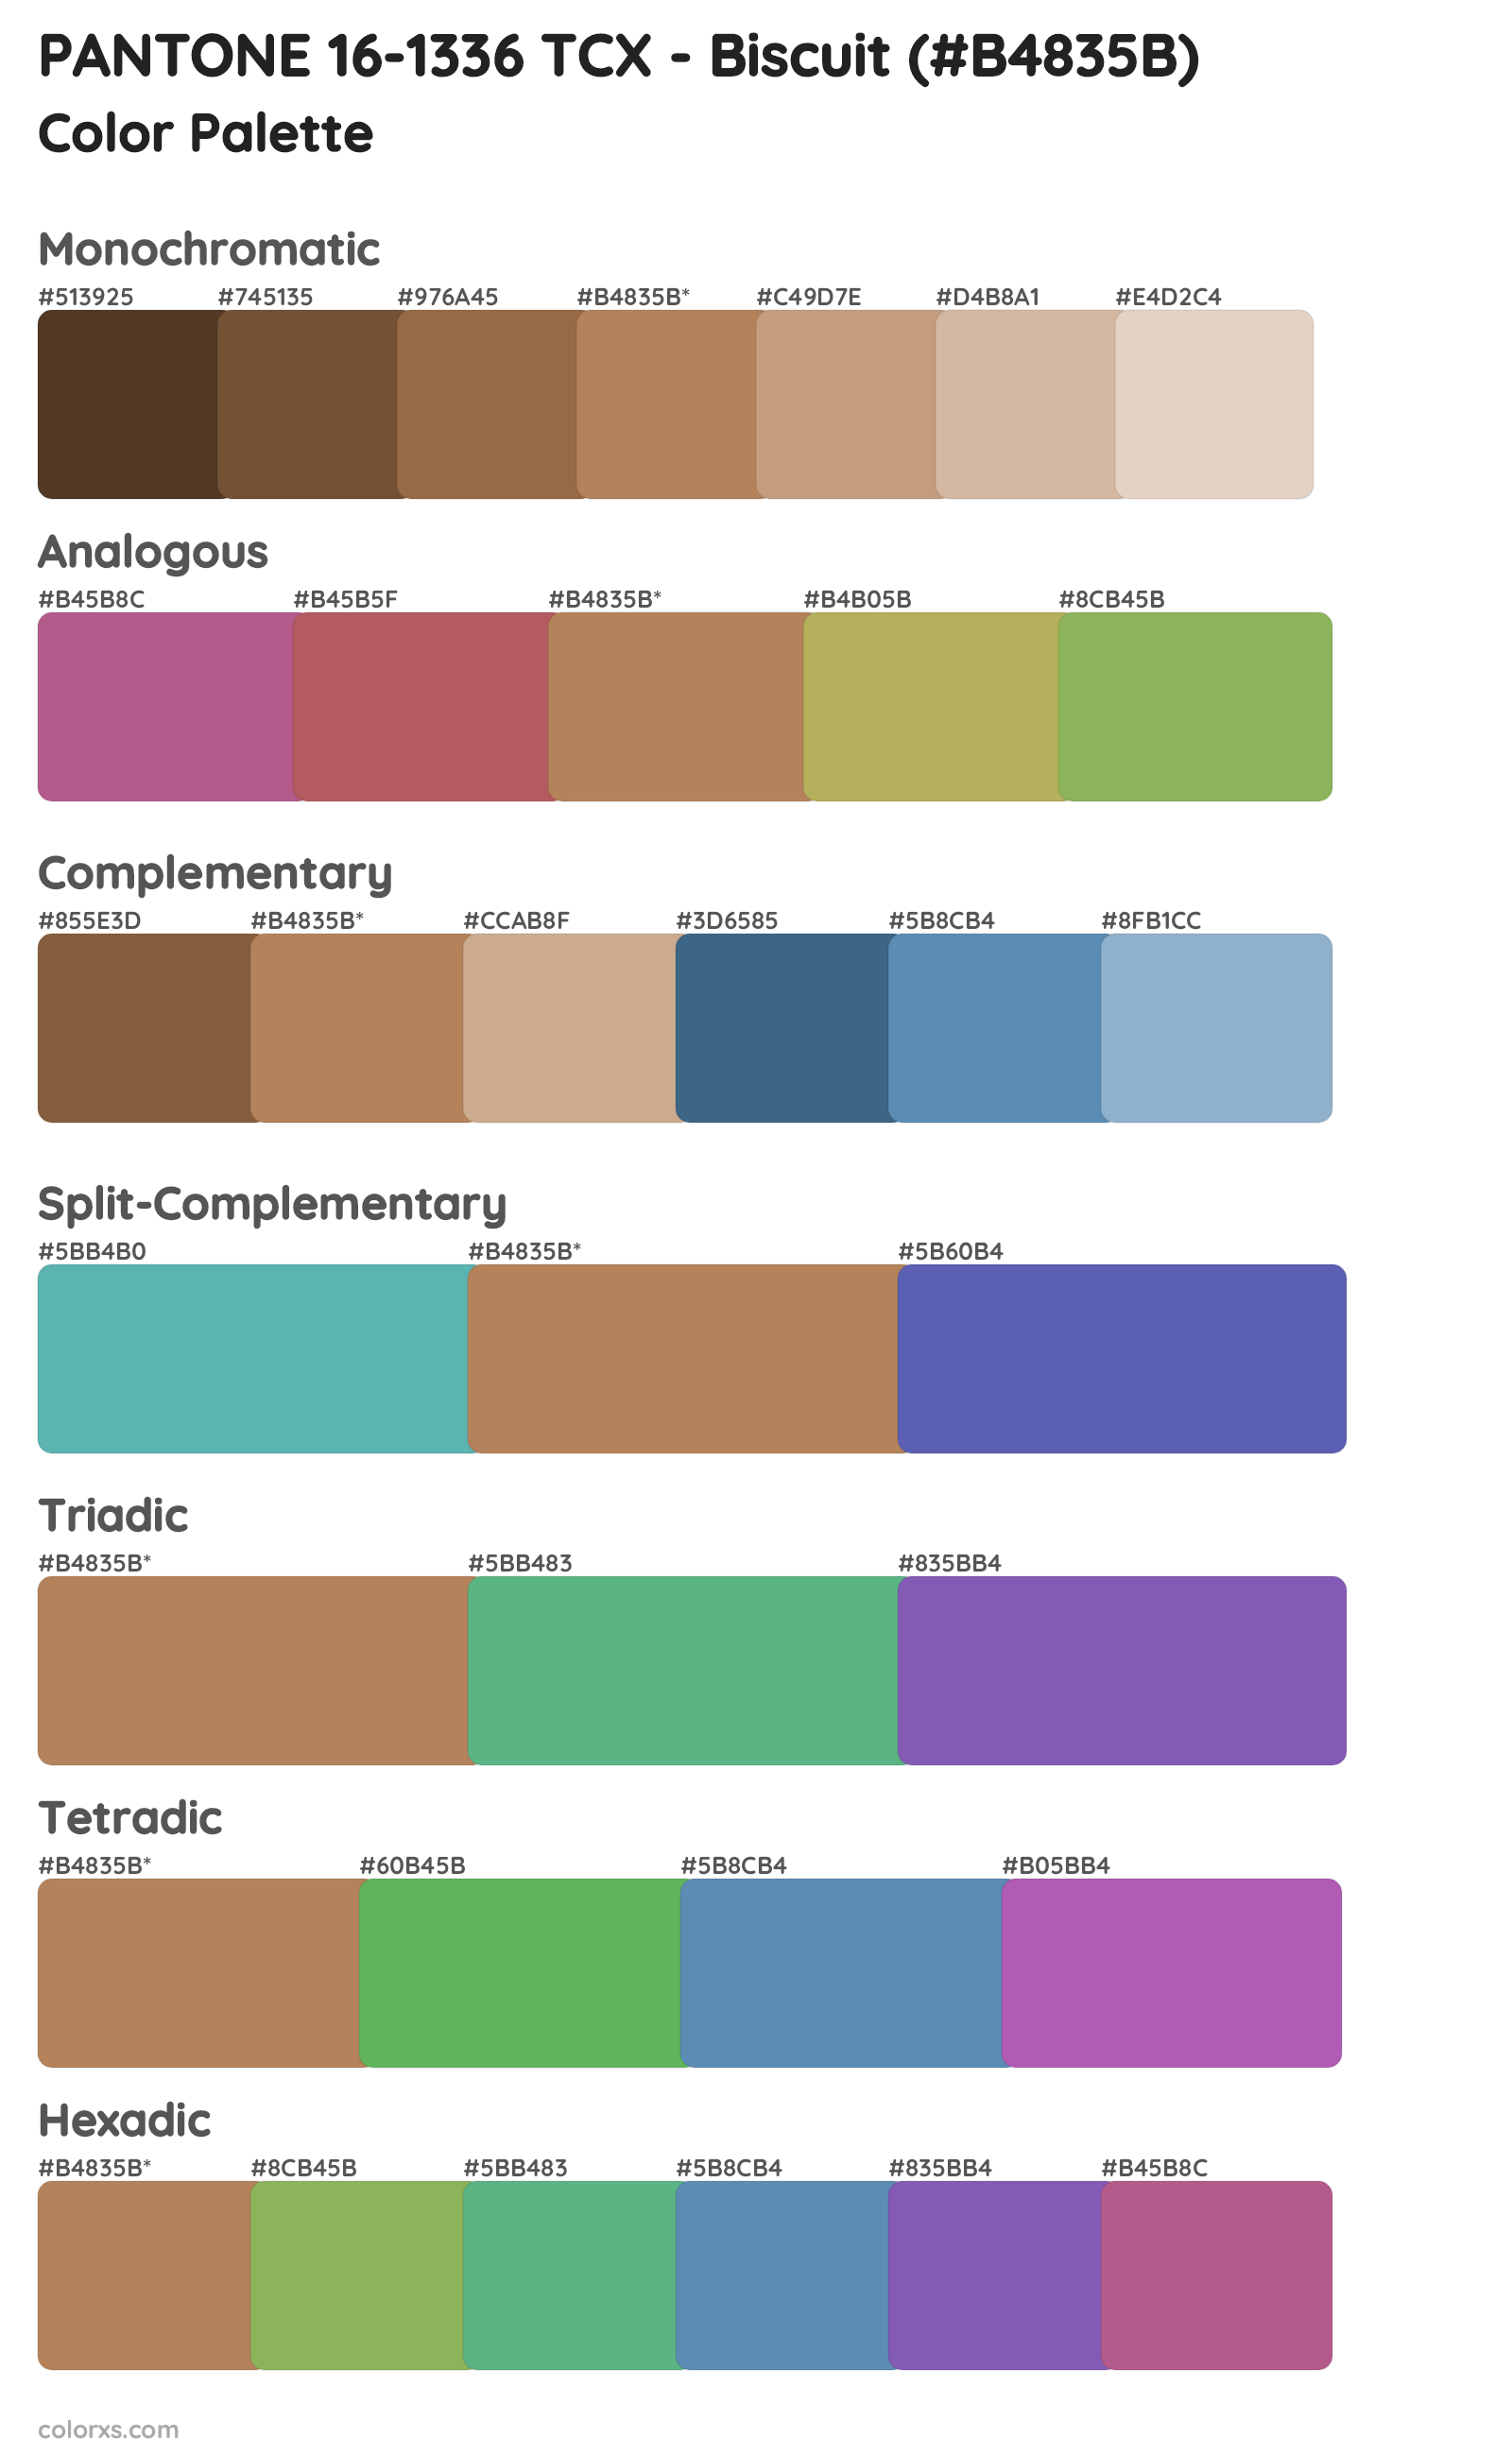 PANTONE 16-1336 TCX - Biscuit Color Scheme Palettes